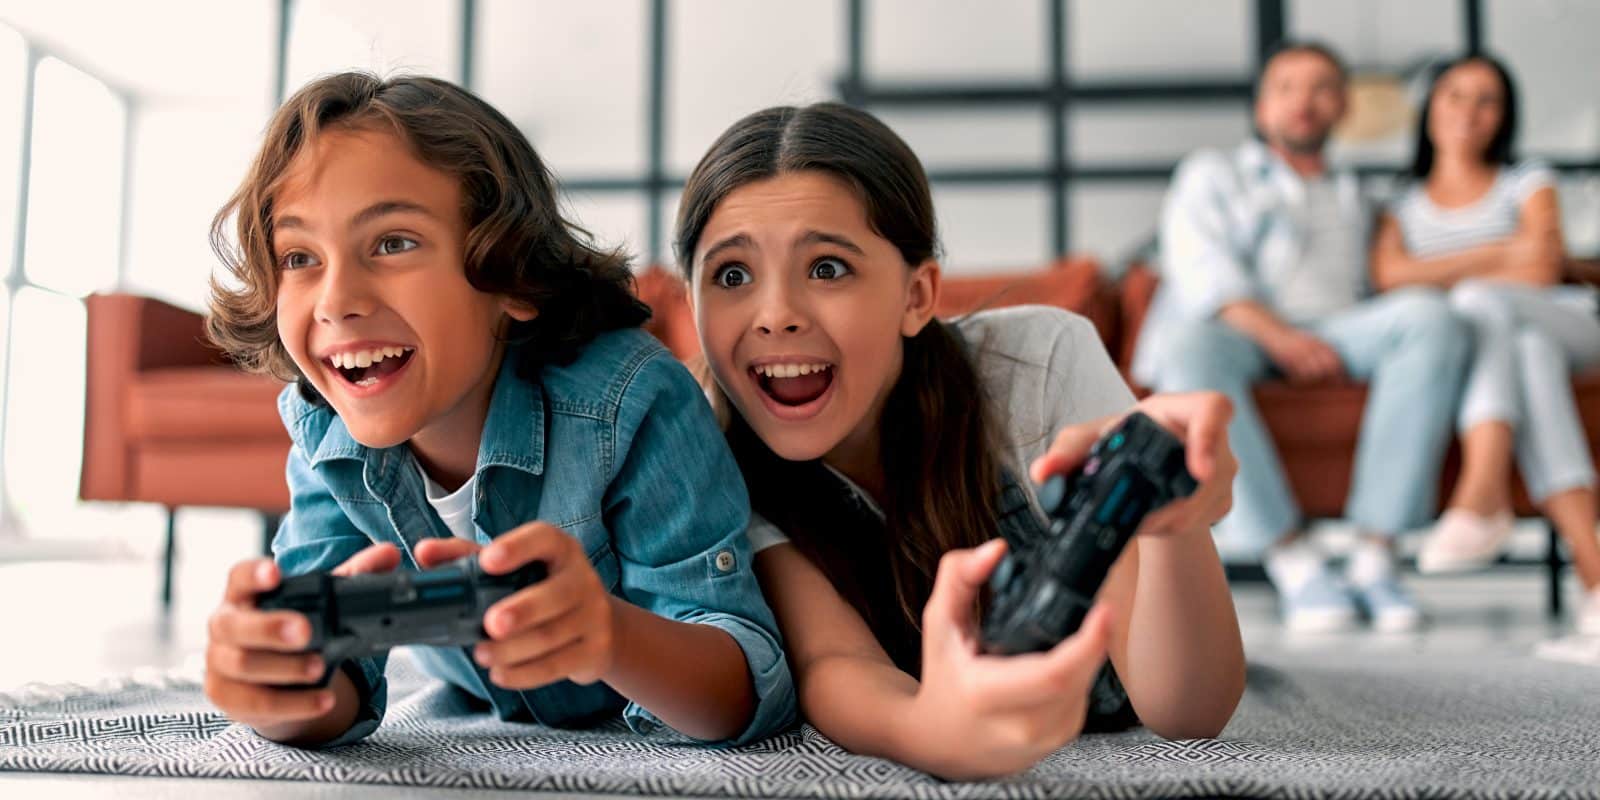 Het spelen van videogames brengt voordelen volgens Nederlandse ouders